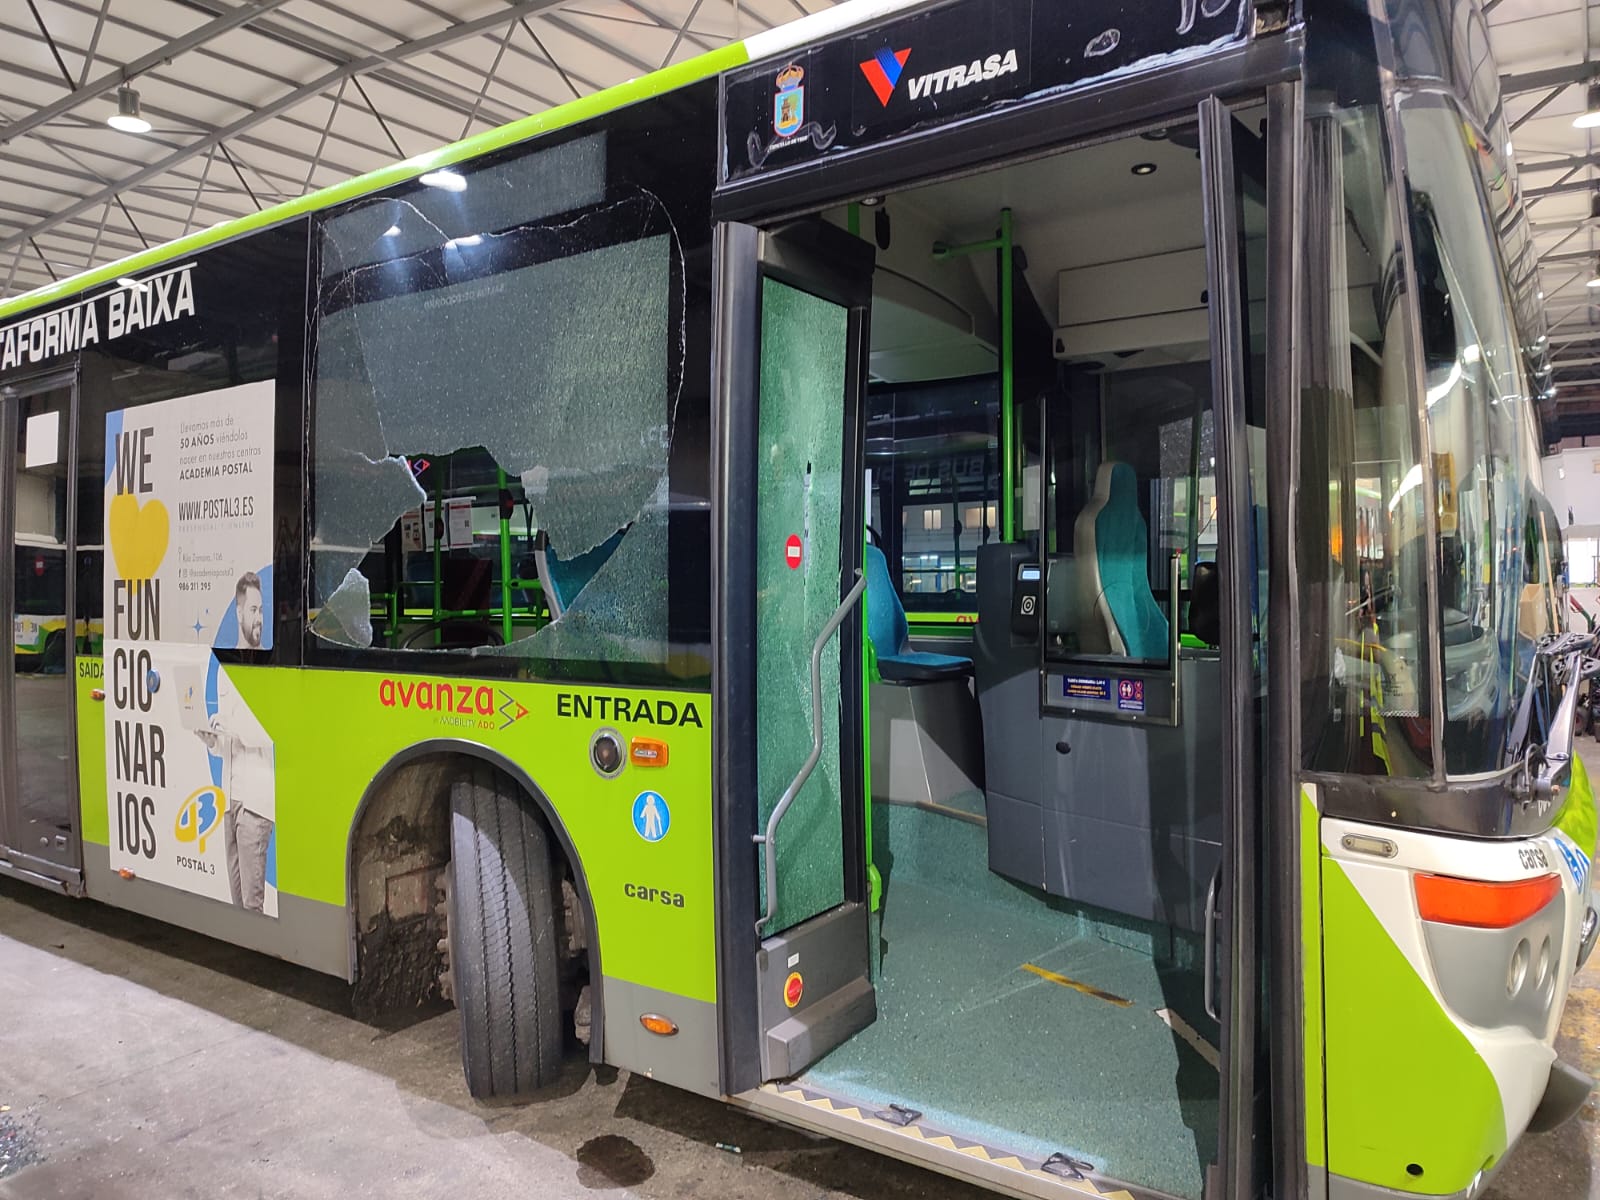 Vitrasa denuncia "daños" a un conductor en un nuevo "ataque" a sus autobuses